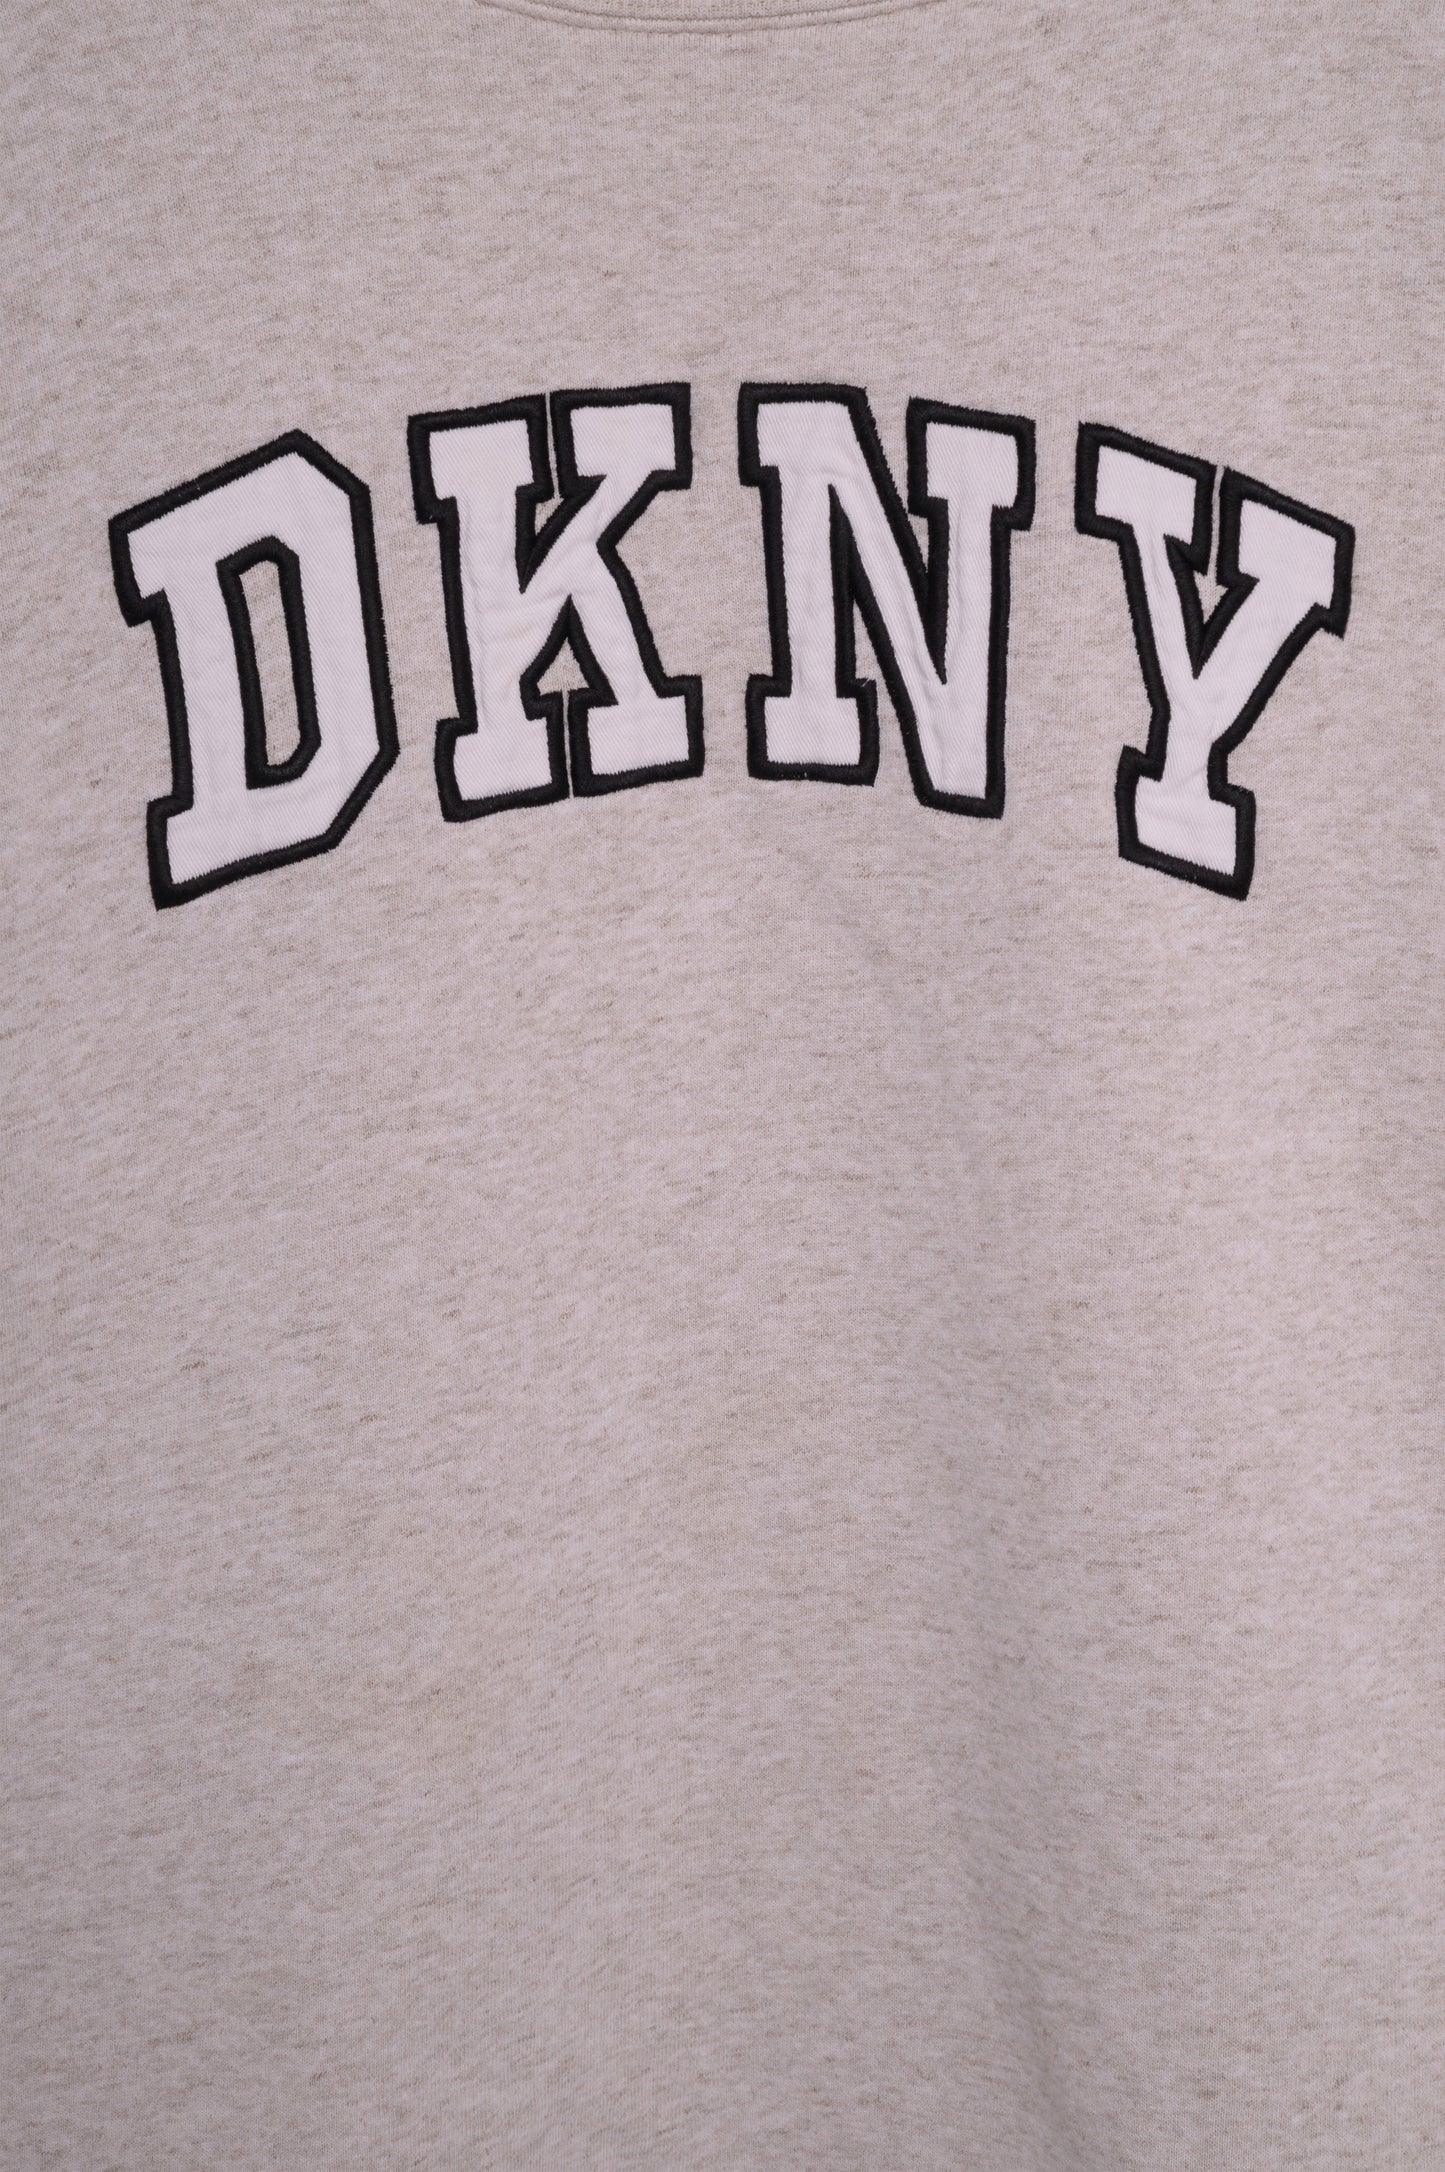 DKNY Boxy Sweatshirt